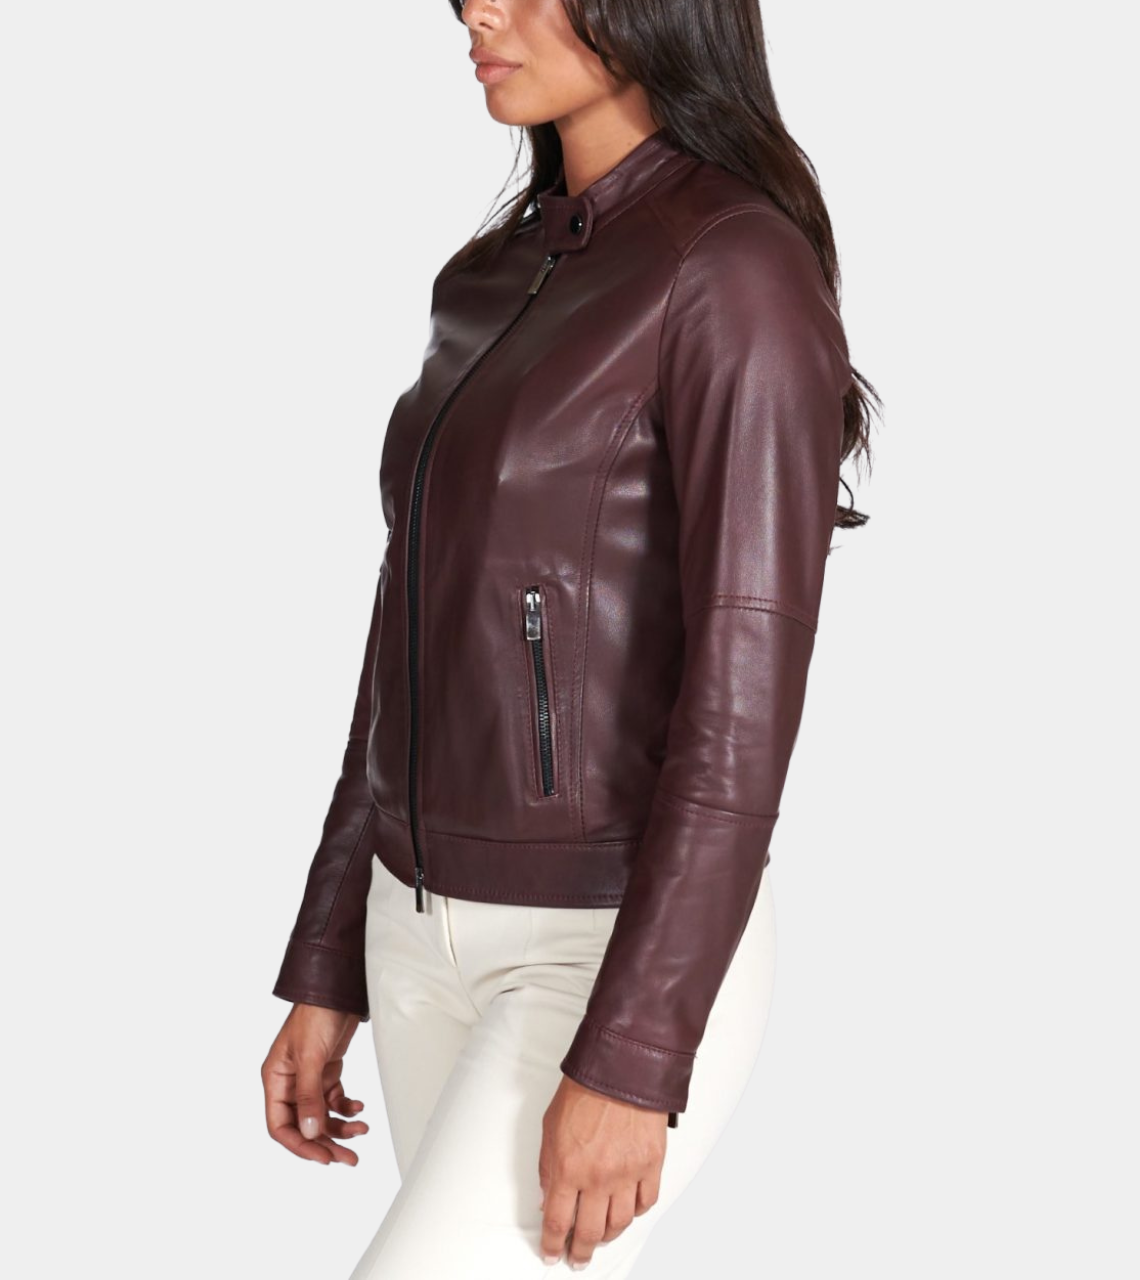  Women's Biker Leather Jacket